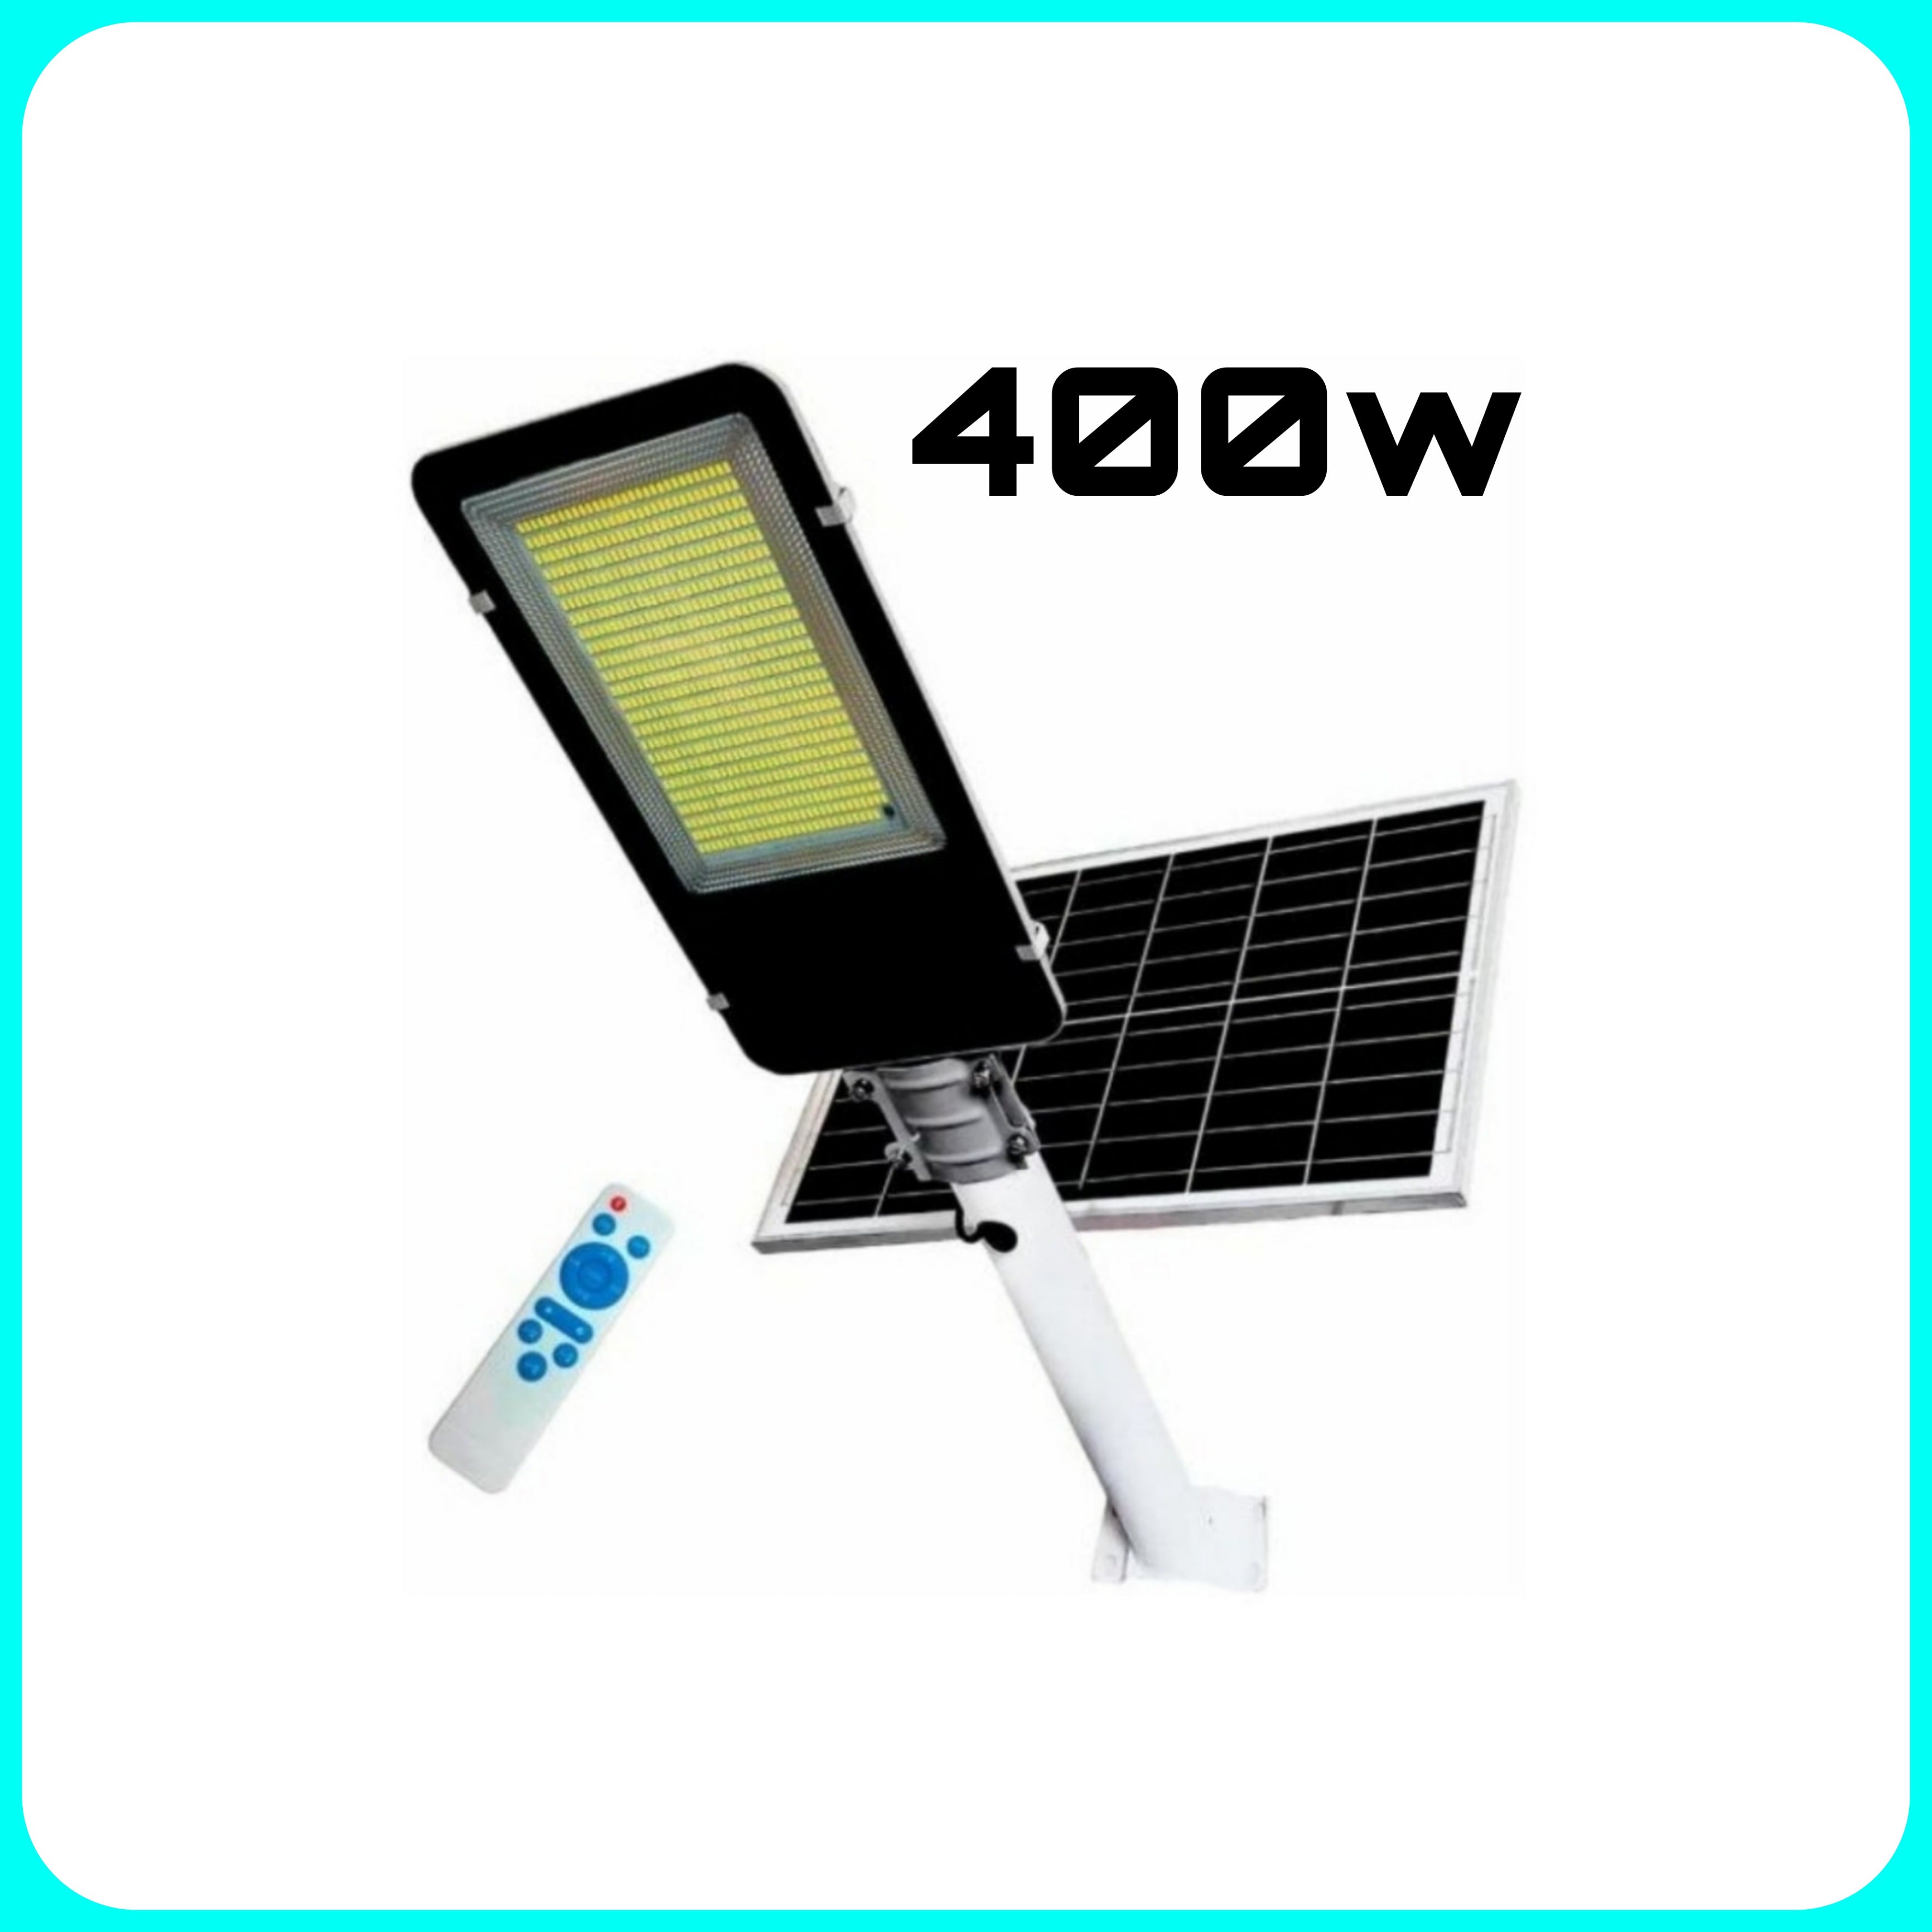 Lampiome Esterno - 400w, Lampione con Pannello Solare, Telecomando, Sensore Crepuscolare, Esterno, Giardino